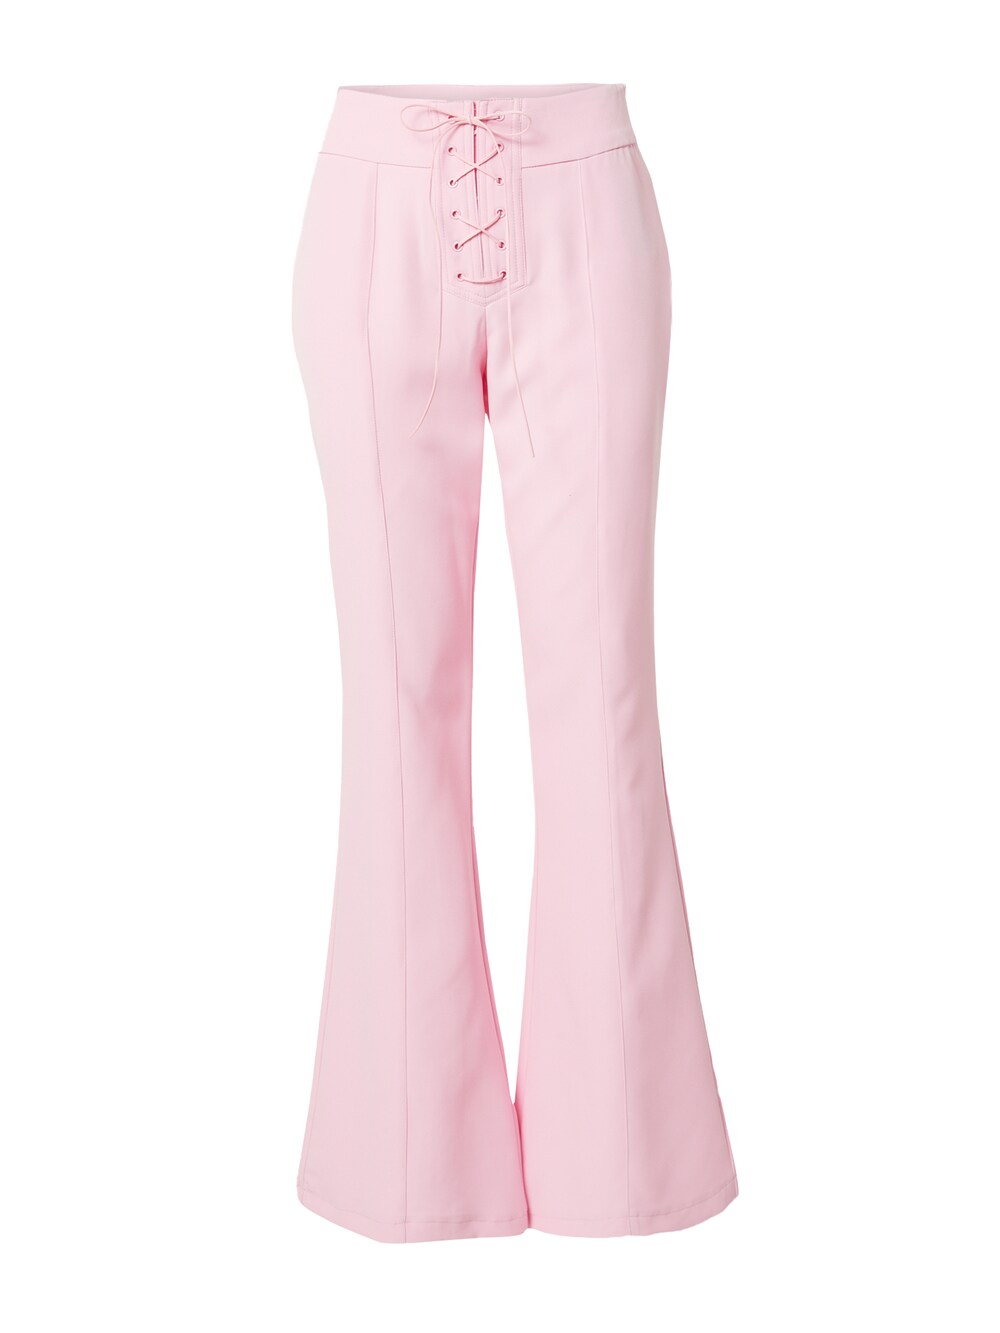 Расклешенные брюки SOMETHINGNEW RUTH, розовый